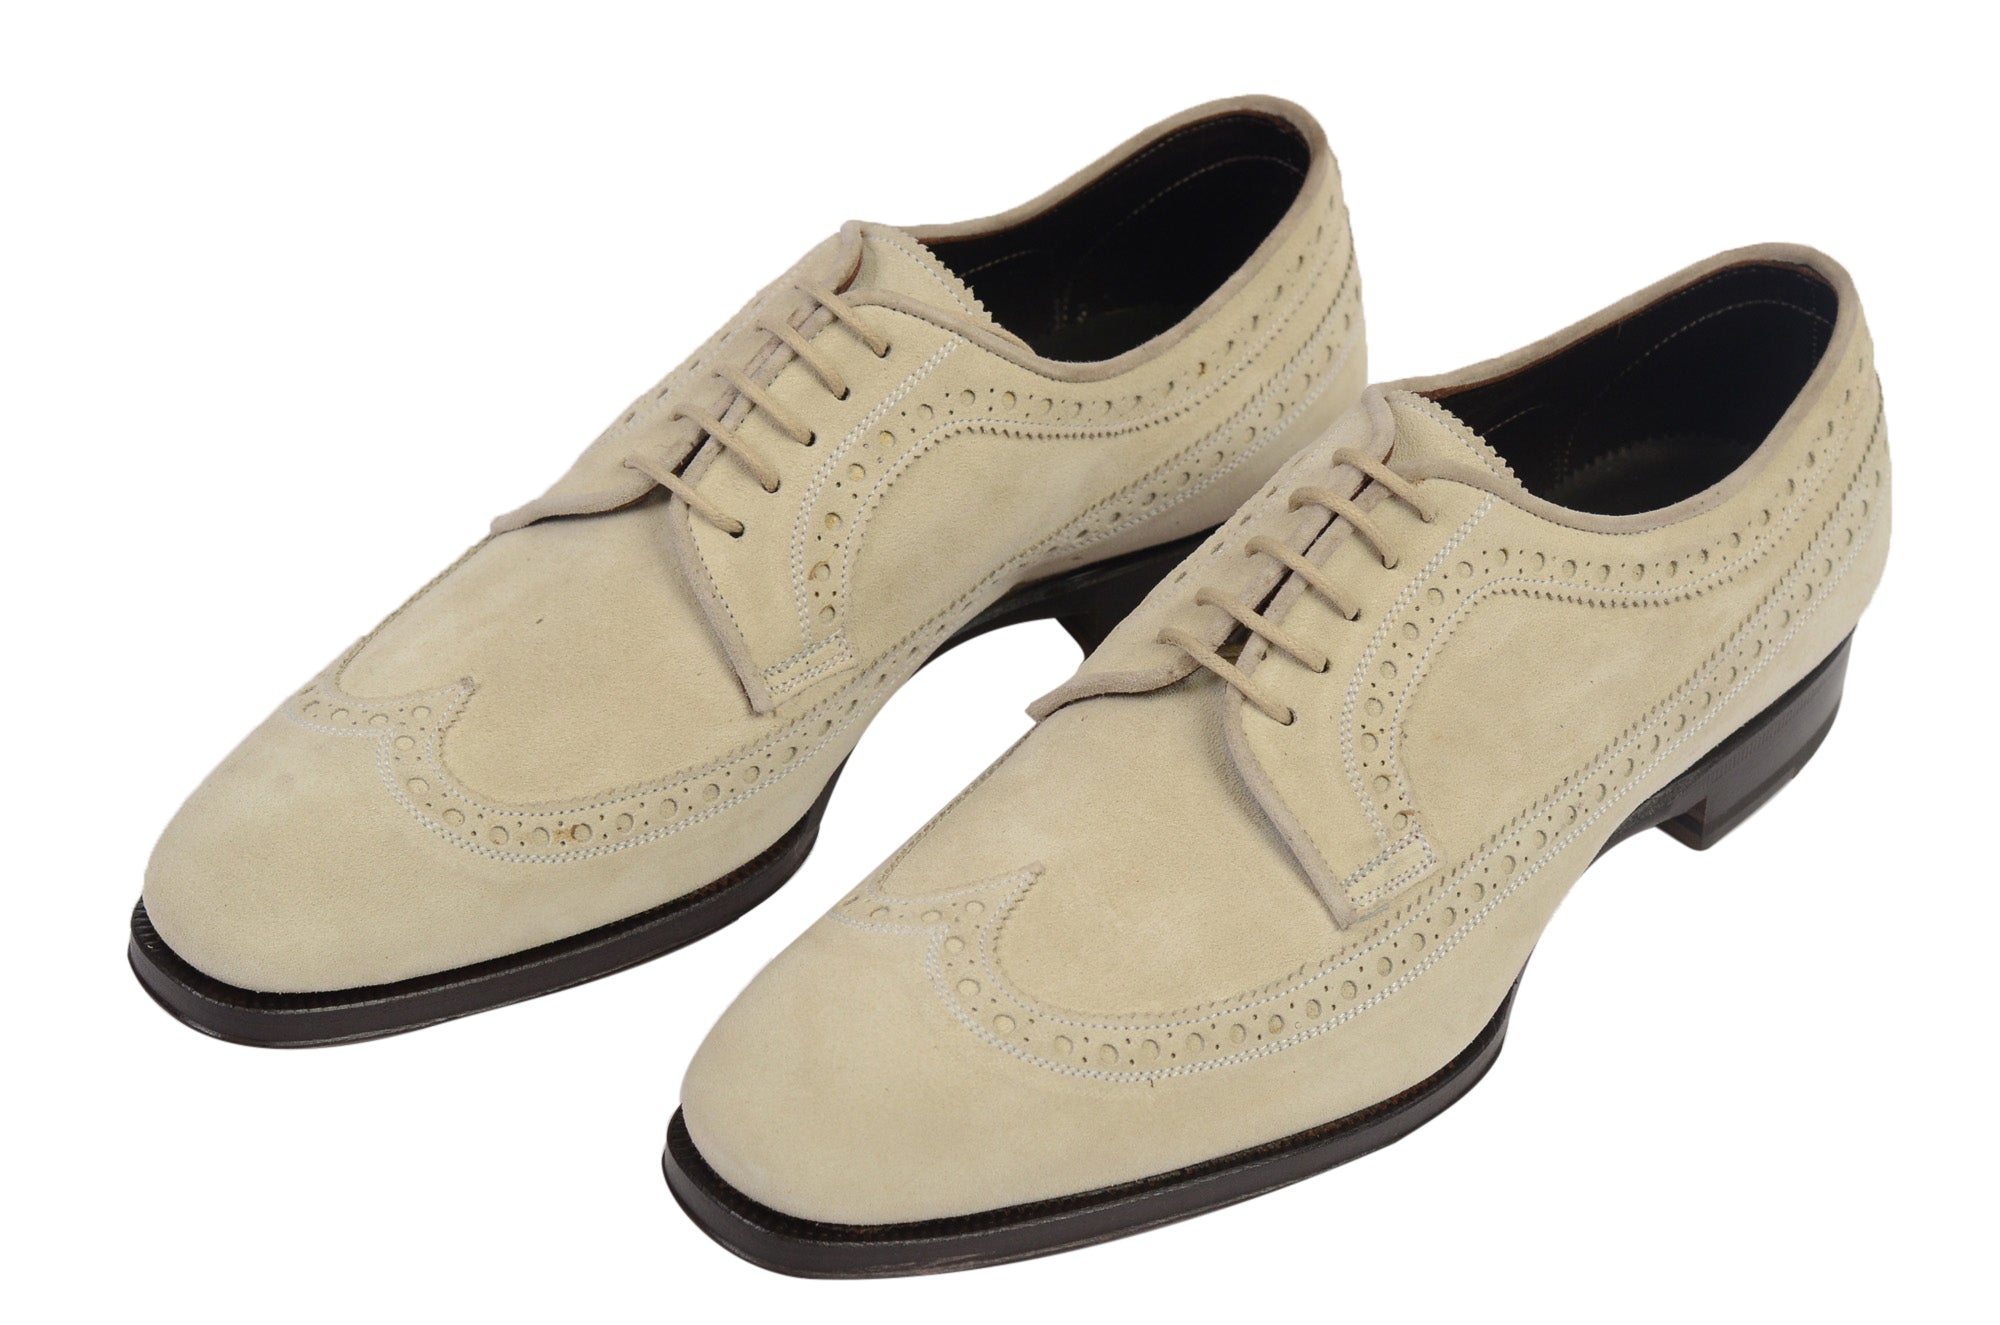 MAX VERRE Napoli Tan Beige Brogue Wingtip Suede Shoes 6.5 NEW US 7.5 8 MAX VERRE